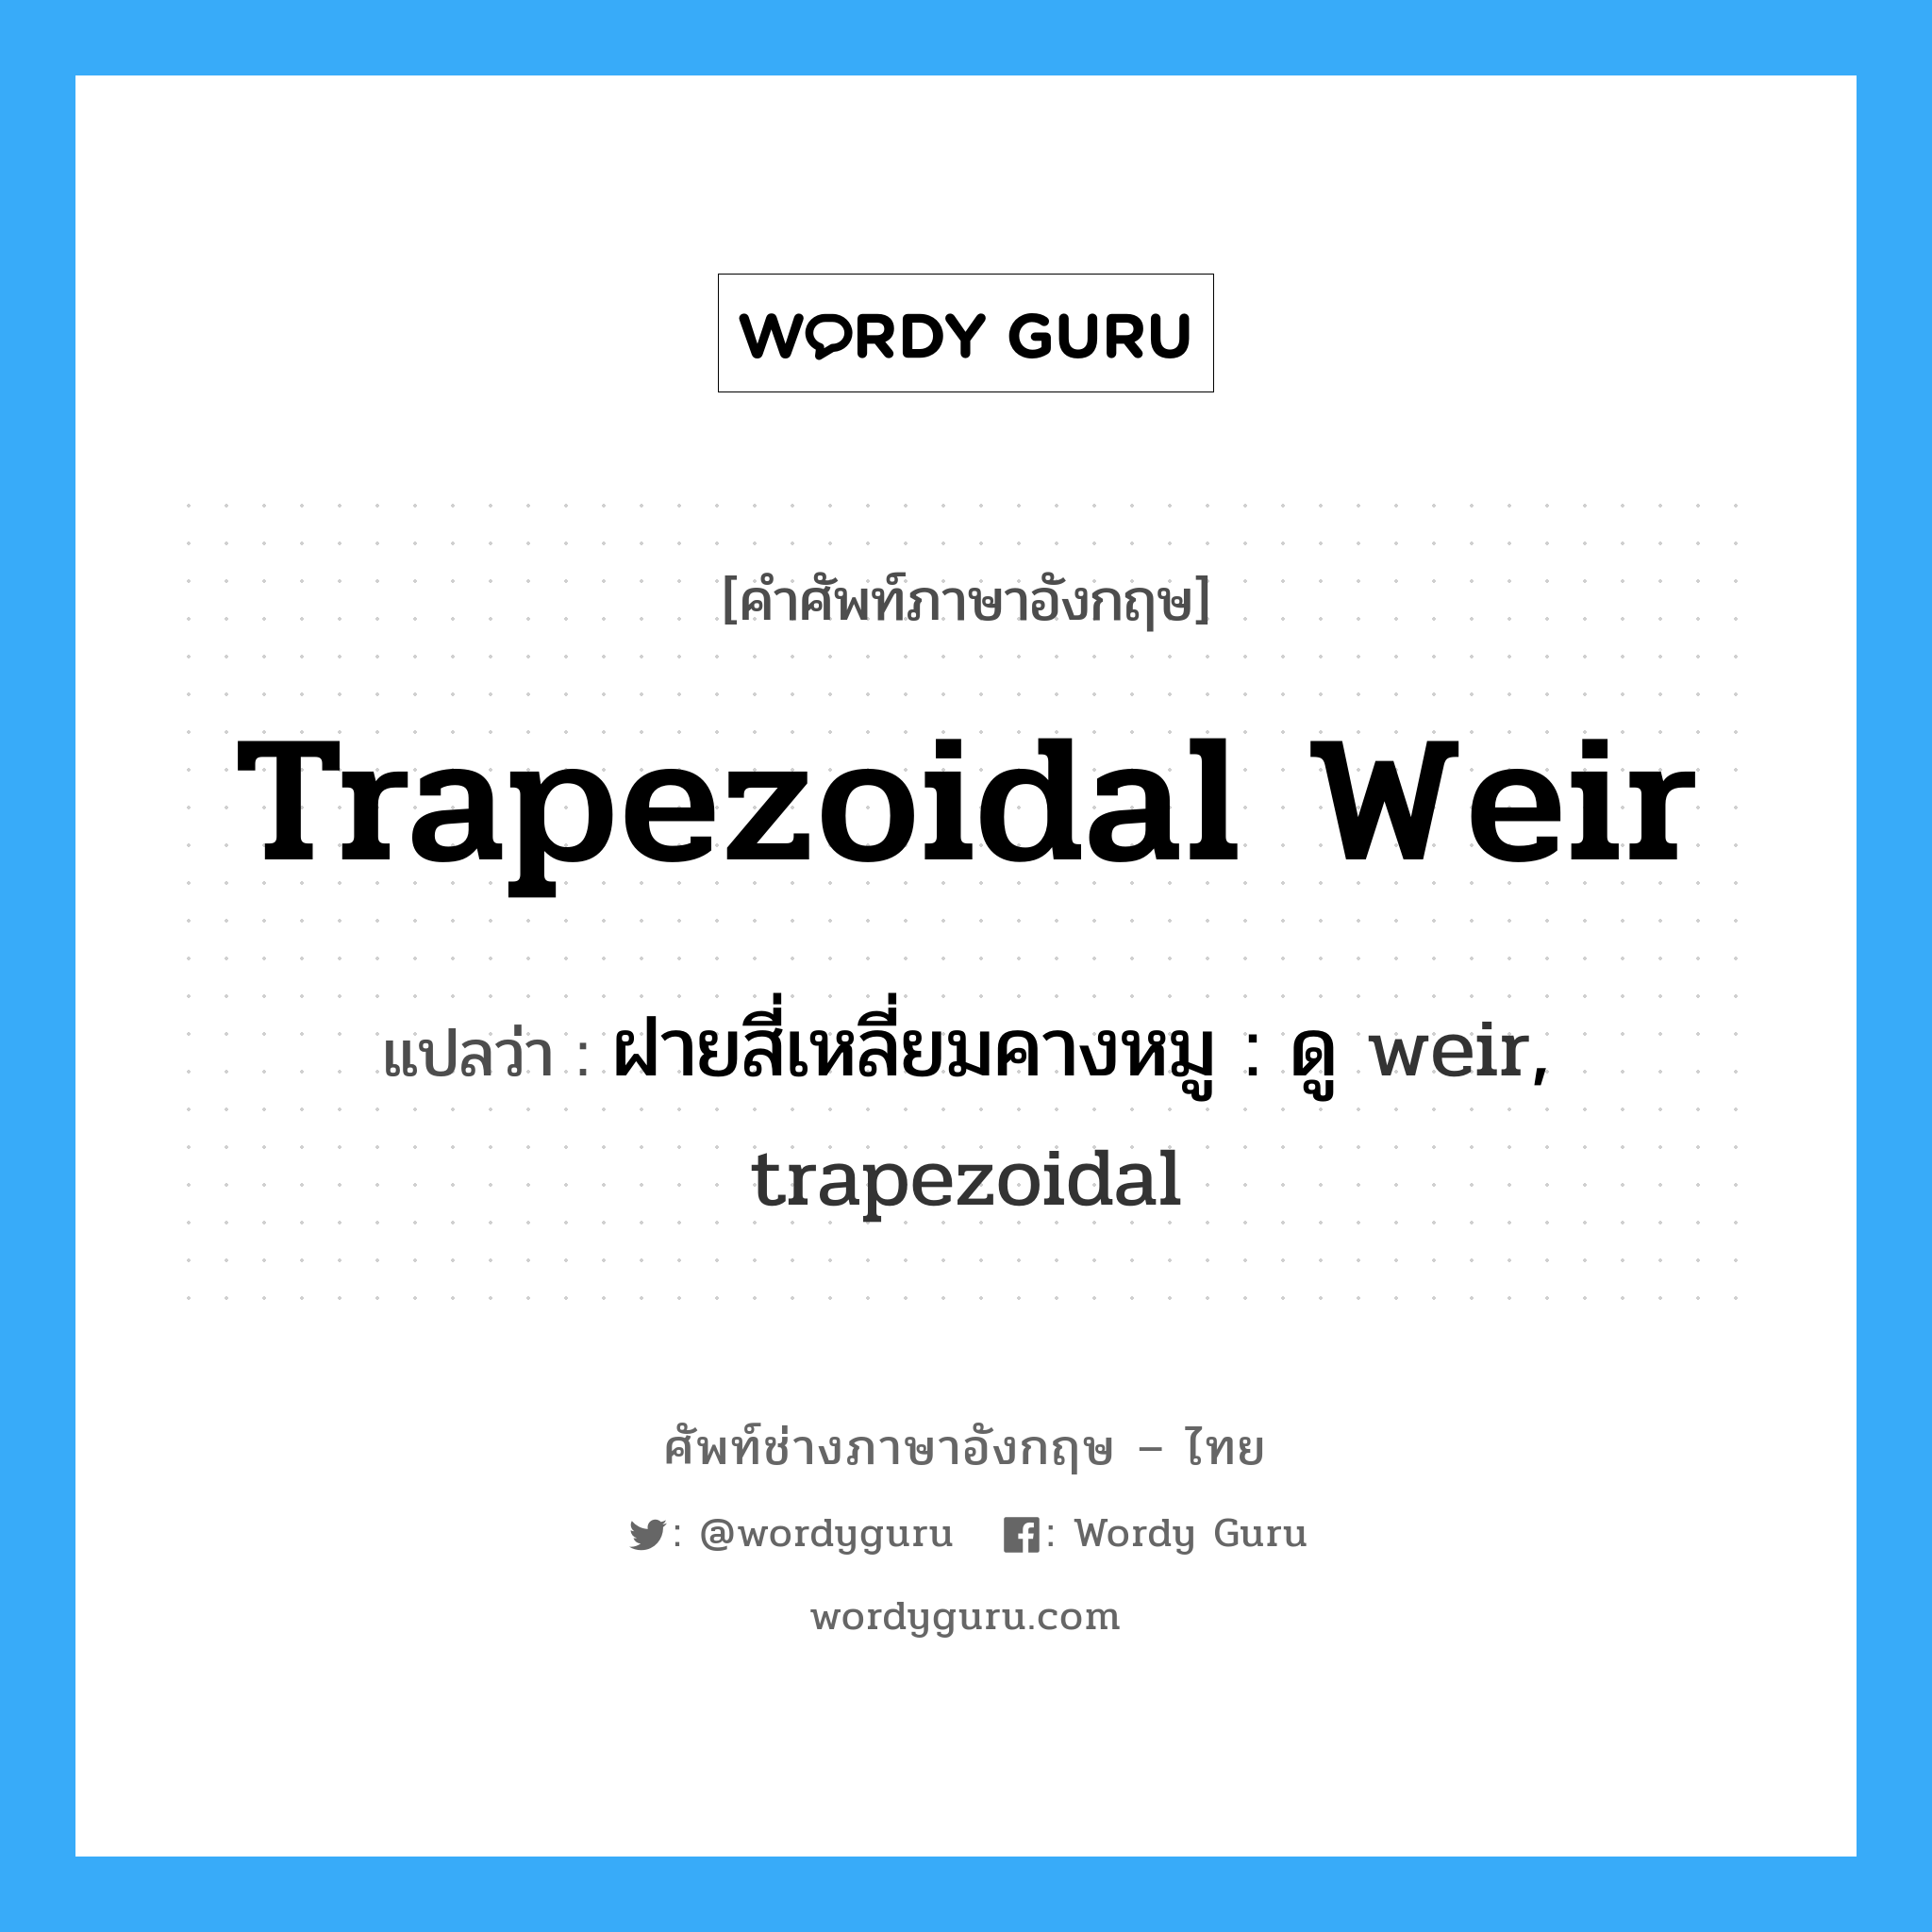 ฝายสี่เหลี่ยมคางหมู : ดู weir, trapezoidal ภาษาอังกฤษ?, คำศัพท์ช่างภาษาอังกฤษ - ไทย ฝายสี่เหลี่ยมคางหมู : ดู weir, trapezoidal คำศัพท์ภาษาอังกฤษ ฝายสี่เหลี่ยมคางหมู : ดู weir, trapezoidal แปลว่า trapezoidal weir